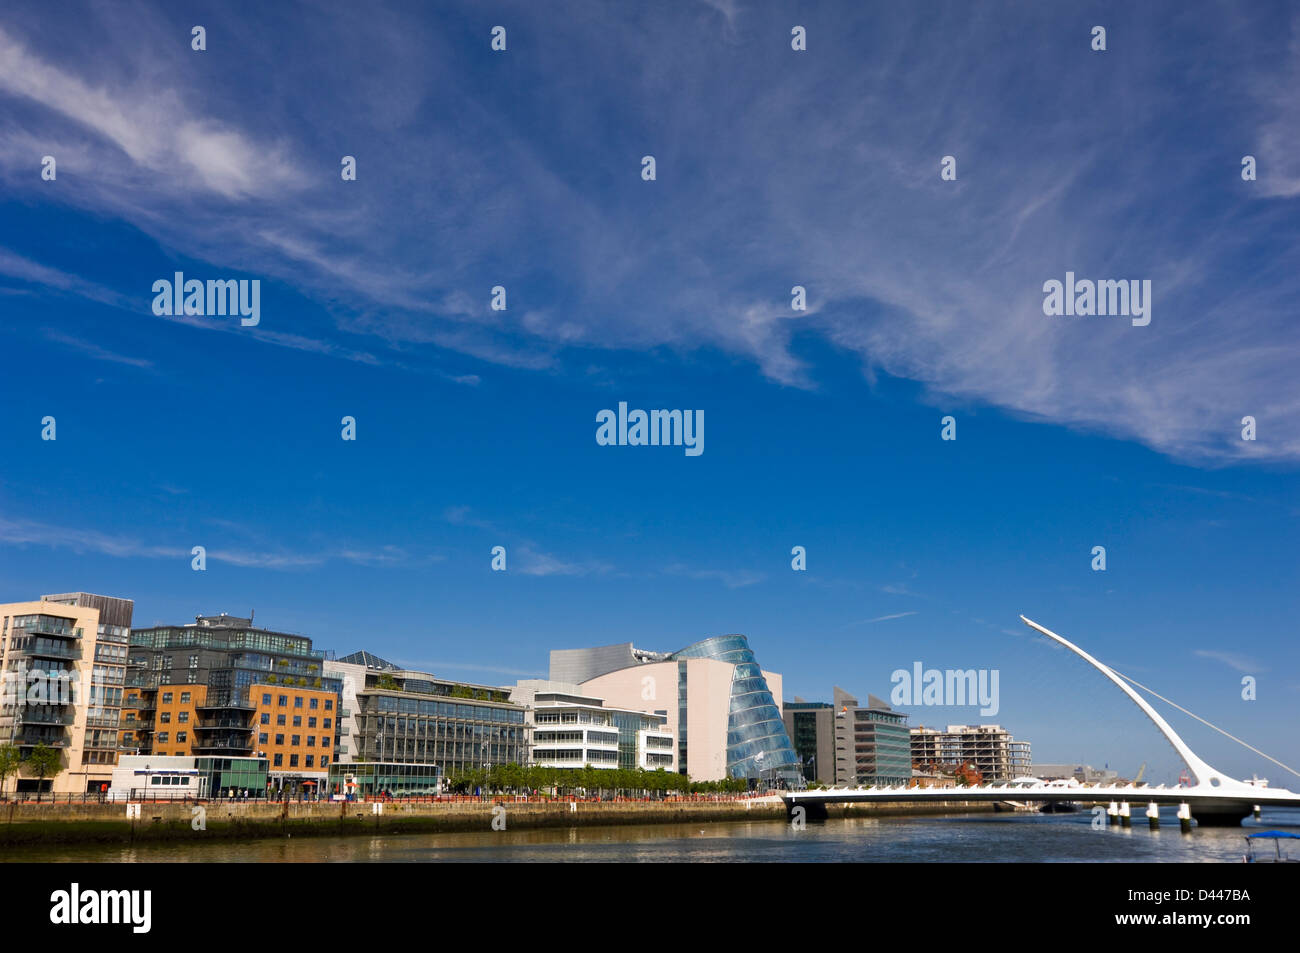 Vista orizzontale di Samuel Beckett Bridge, Droichead Samuel Beckett, attraversando il fiume Liffey a Dublino in una giornata di sole. Foto Stock